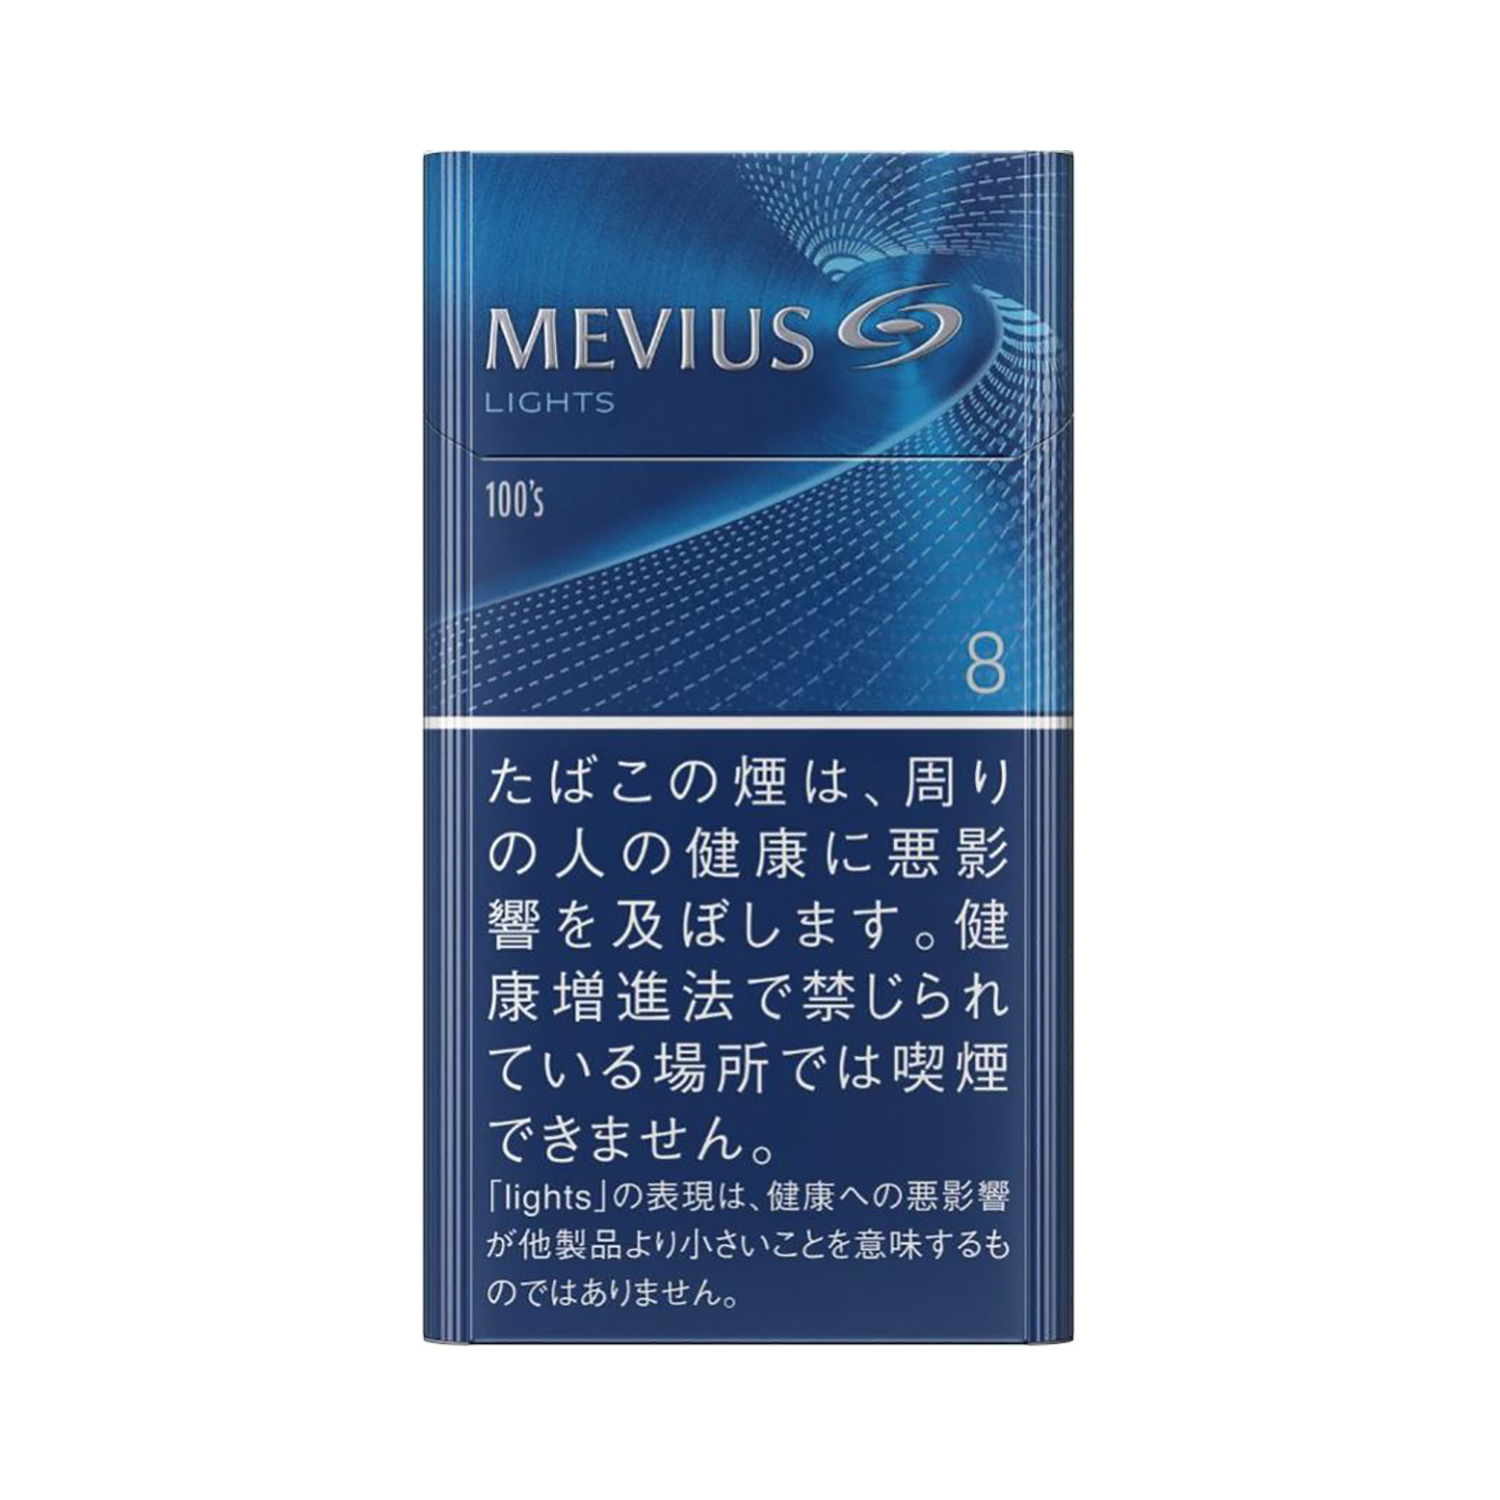 MEVIUS LIGHTS 100's BOX / Tar:8mg Nicotine:0.7mg